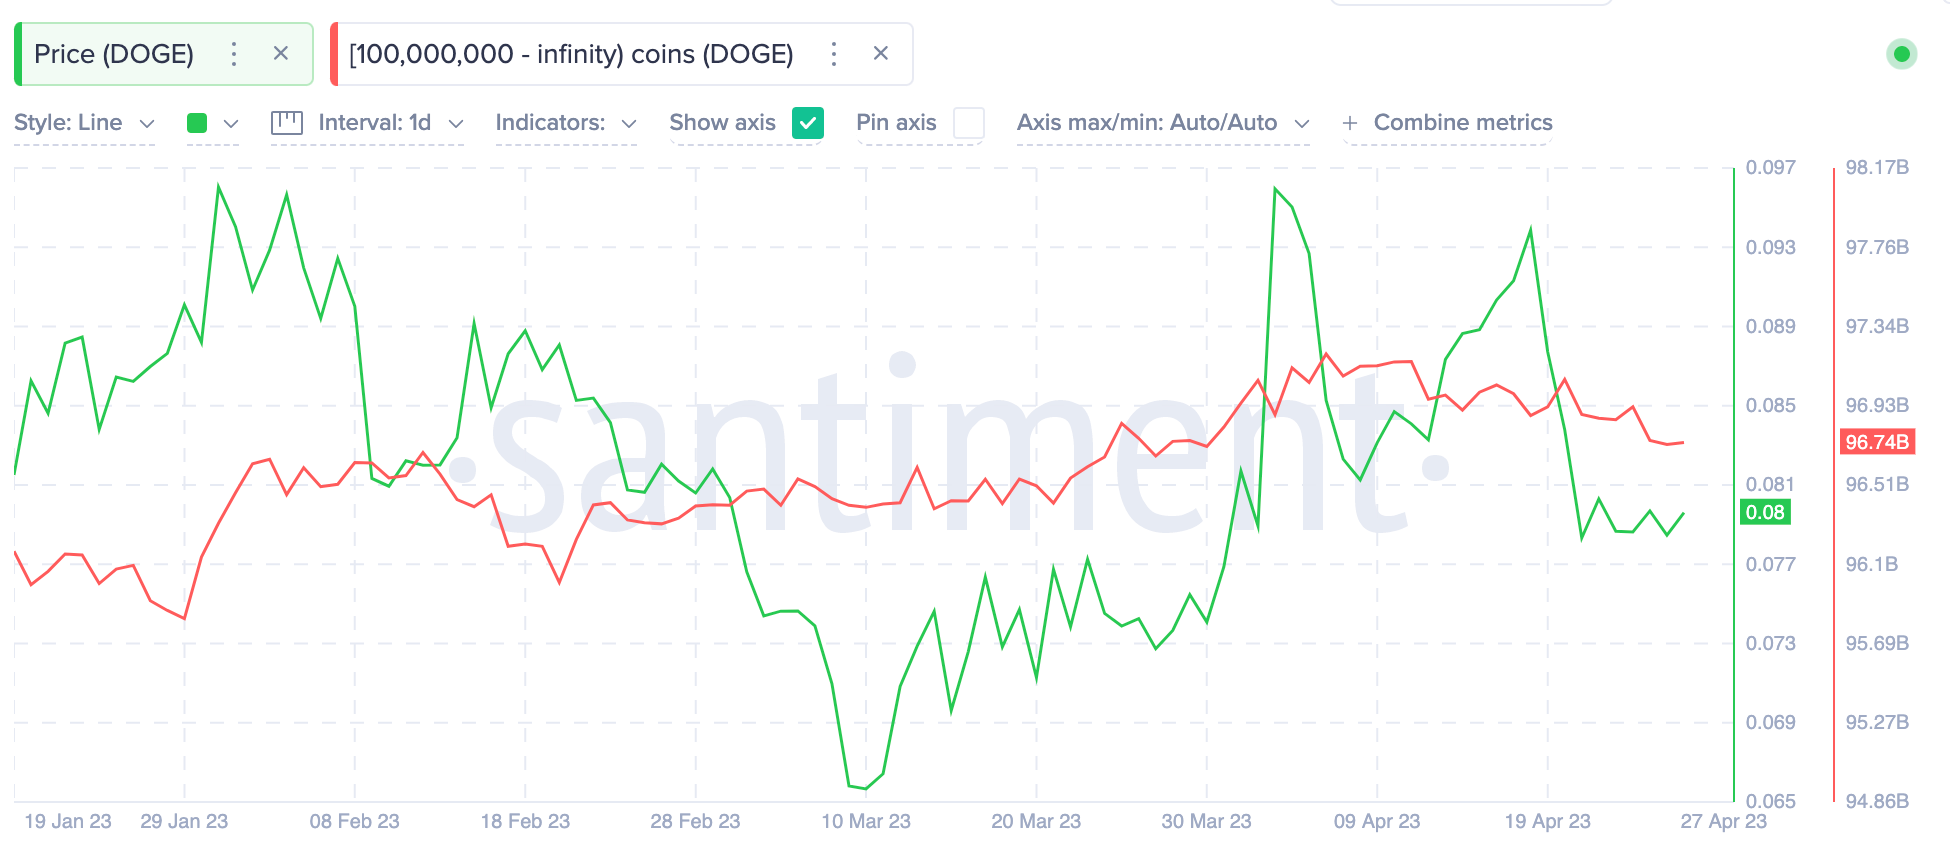 Dogecoin (DOGE) Whales Wallet Balances vs Price. April 2023.